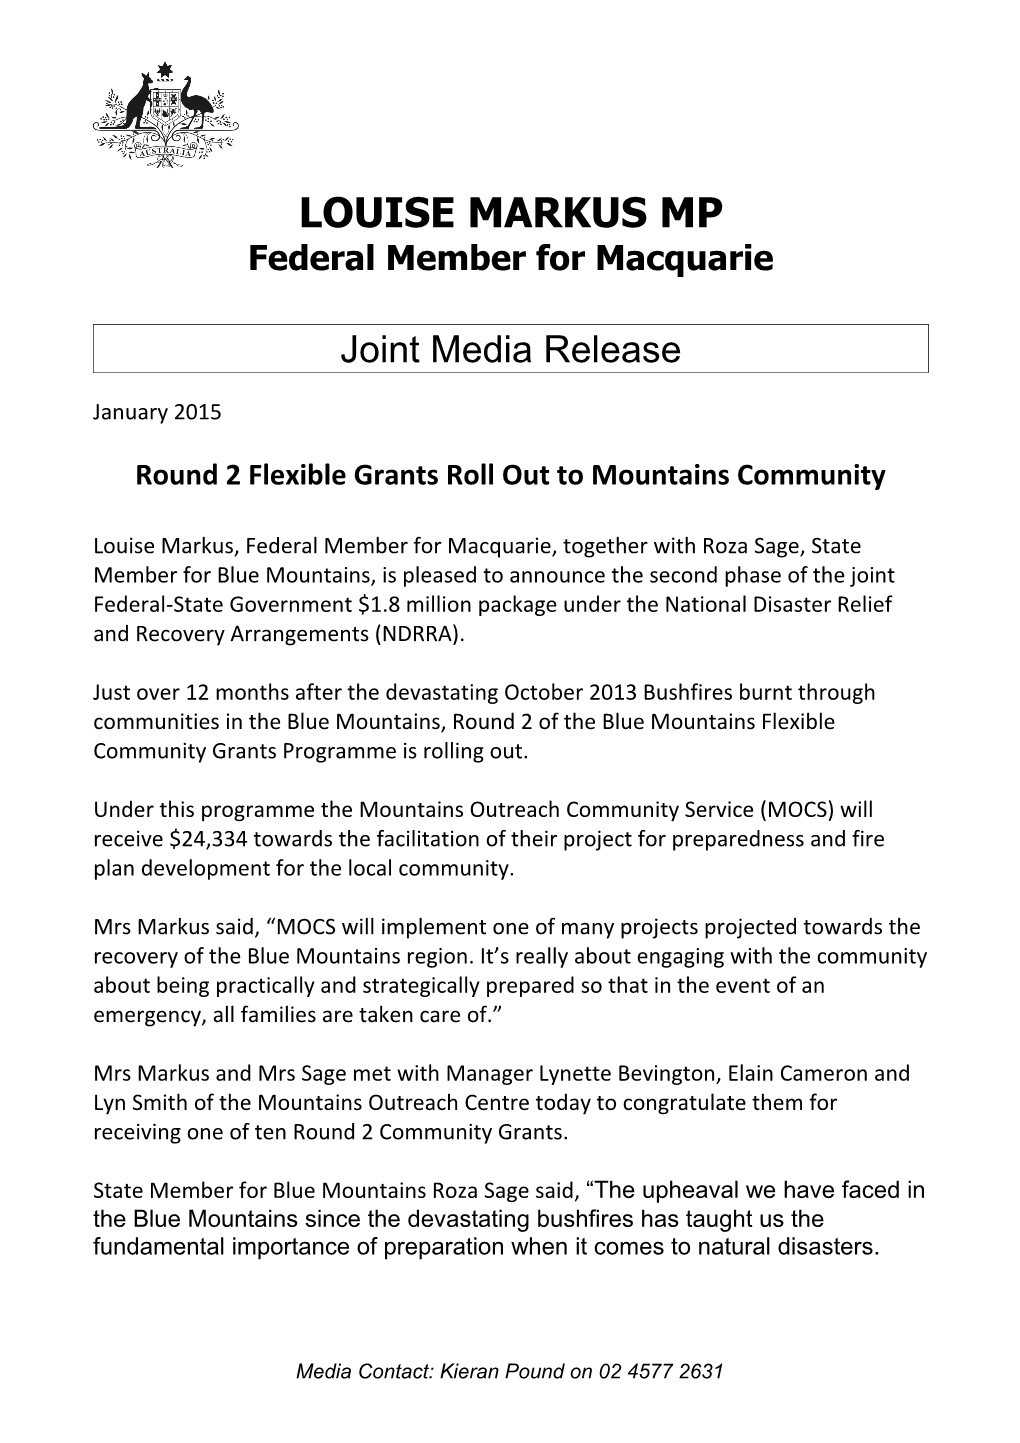 Federal Member for Macquarie